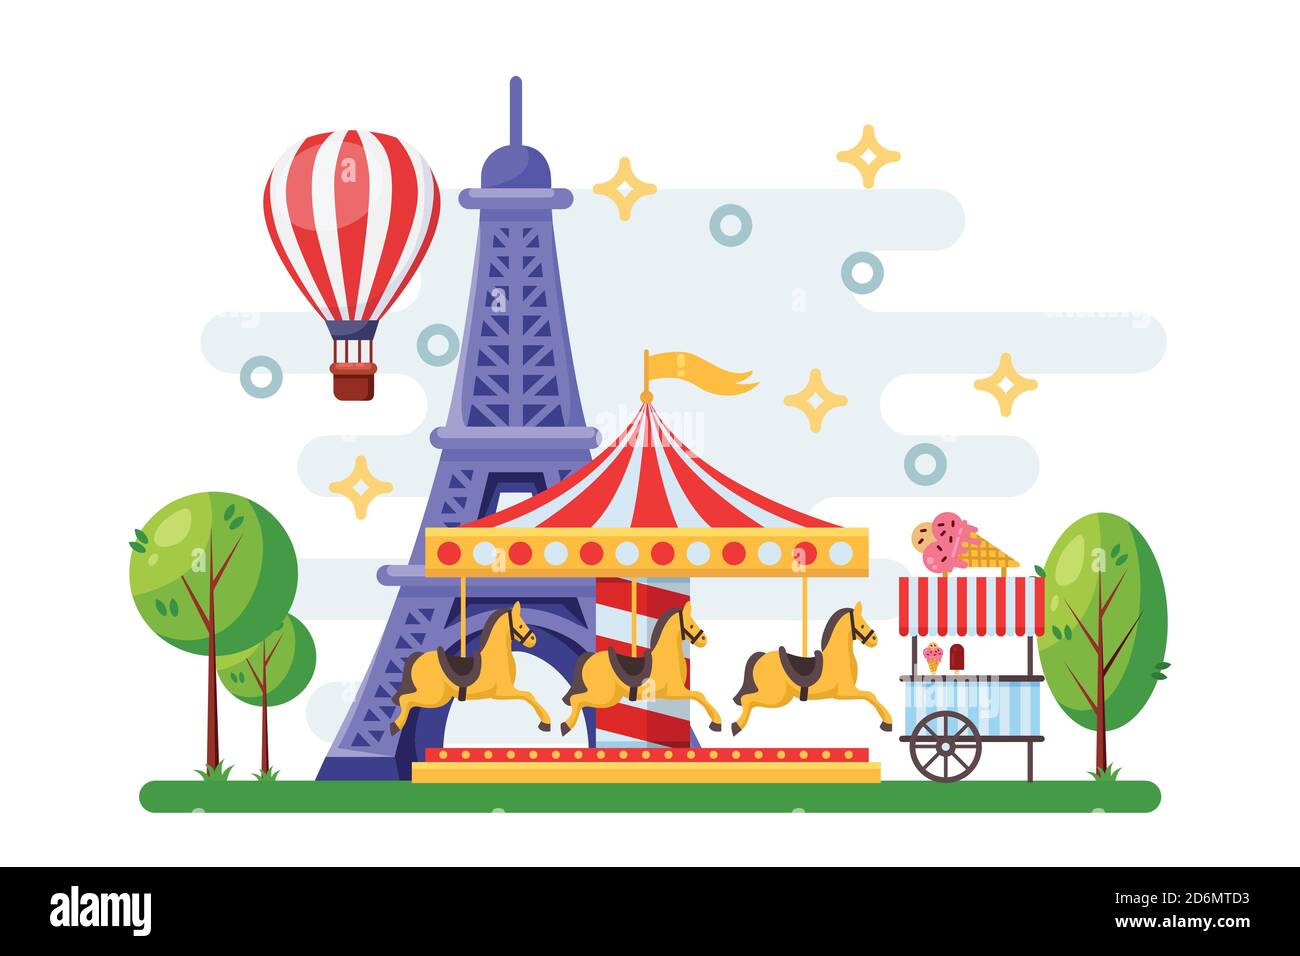 Il paesaggio urbano di Parigi con la Torre Eiffel, il giostra del parco dei divertimenti e il tram per il cibo di strada. Immagine piatta vettoriale. Carnevale e festival di vacanze design el Illustrazione Vettoriale